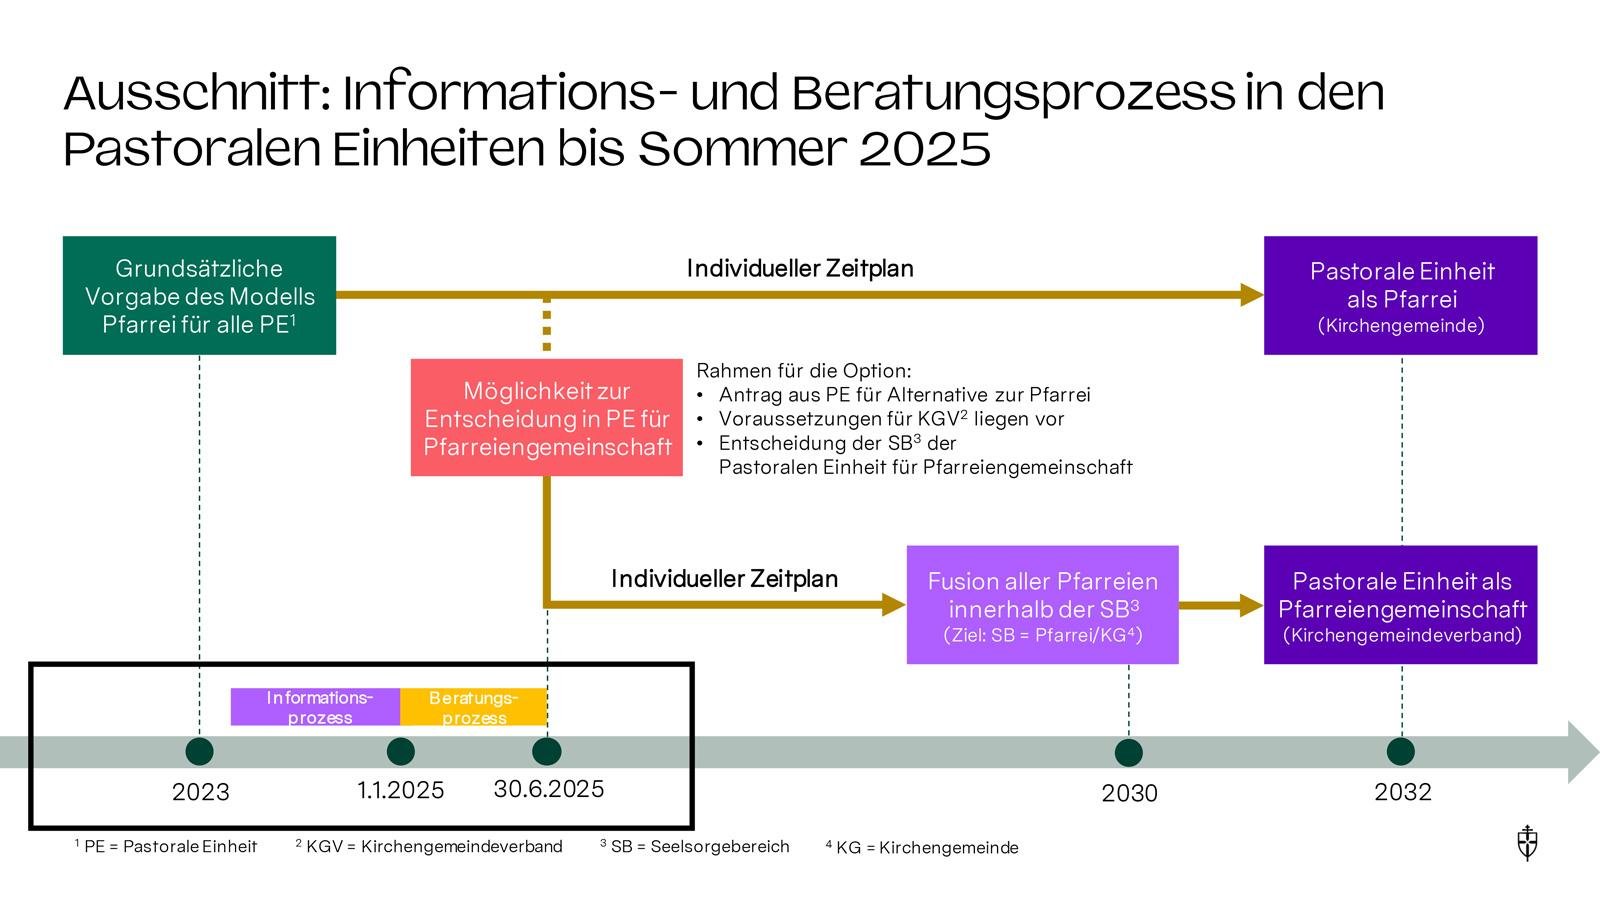 zusammenfinden_Prozess bis 2032 (c) Erzbistum Köln